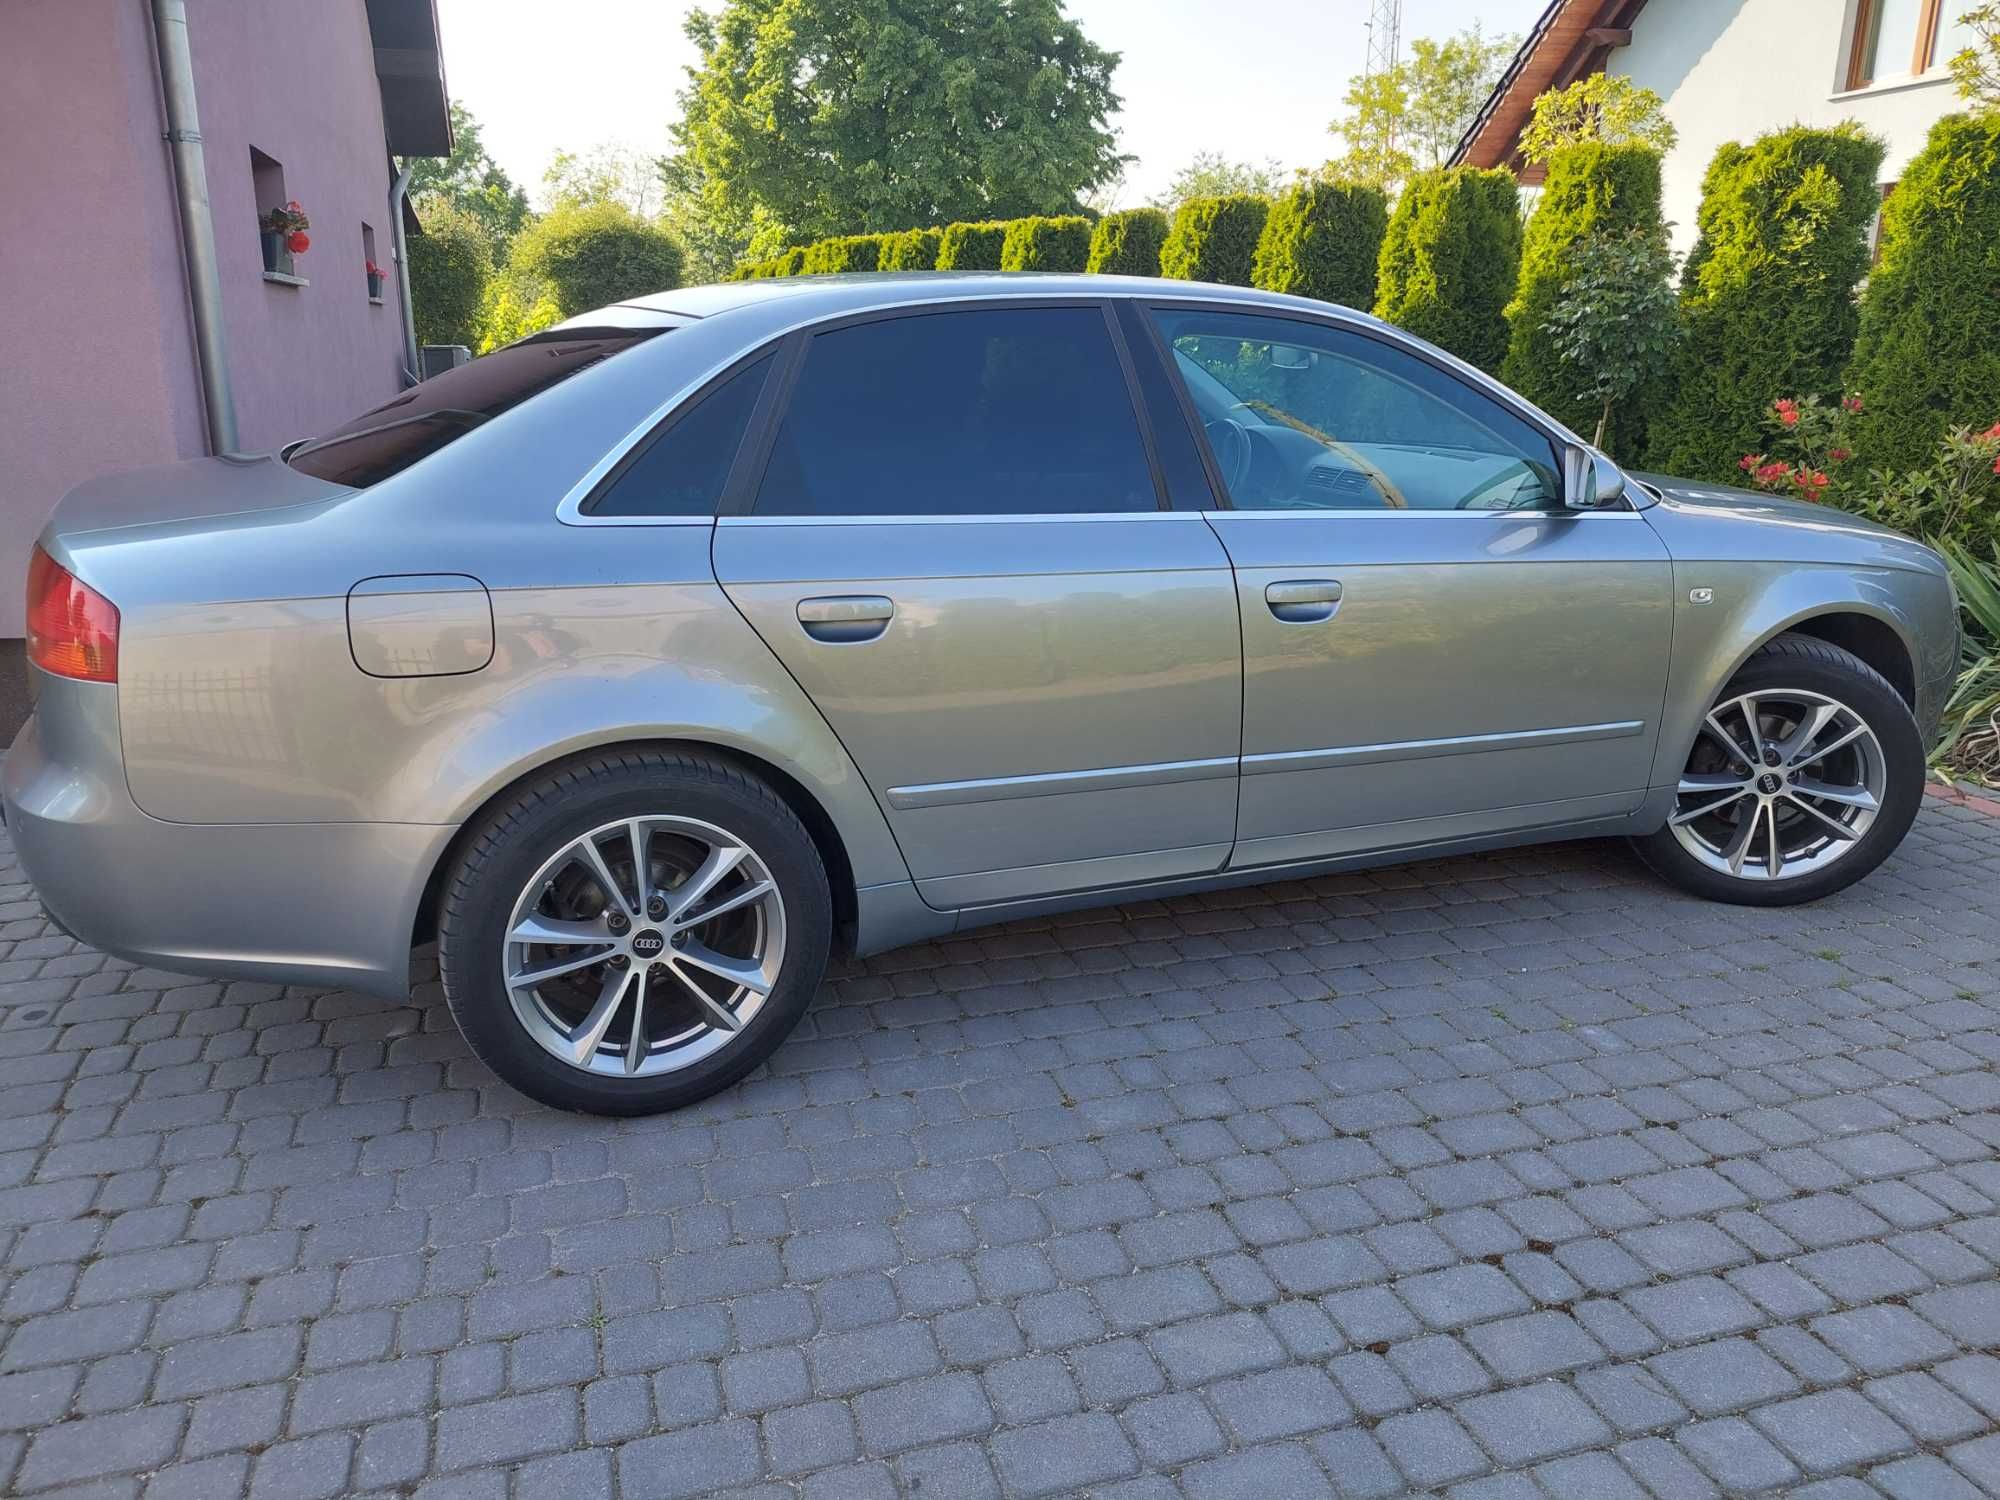 Alufelgi Audi 17" 5x112 245/45/17